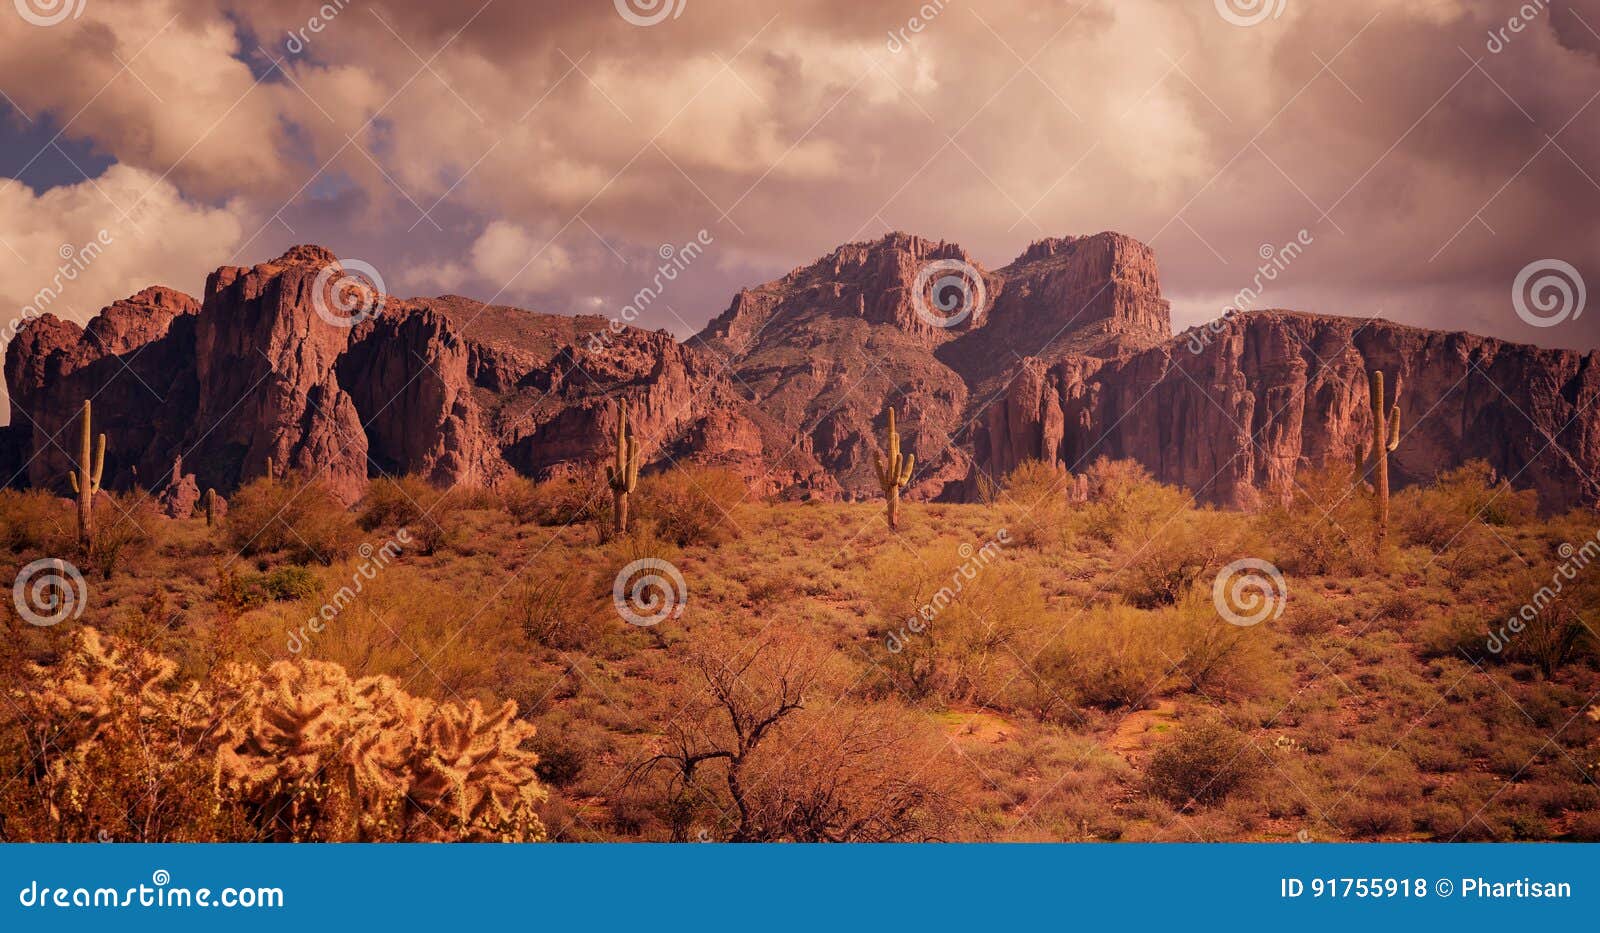 arizona desert wild west landscape